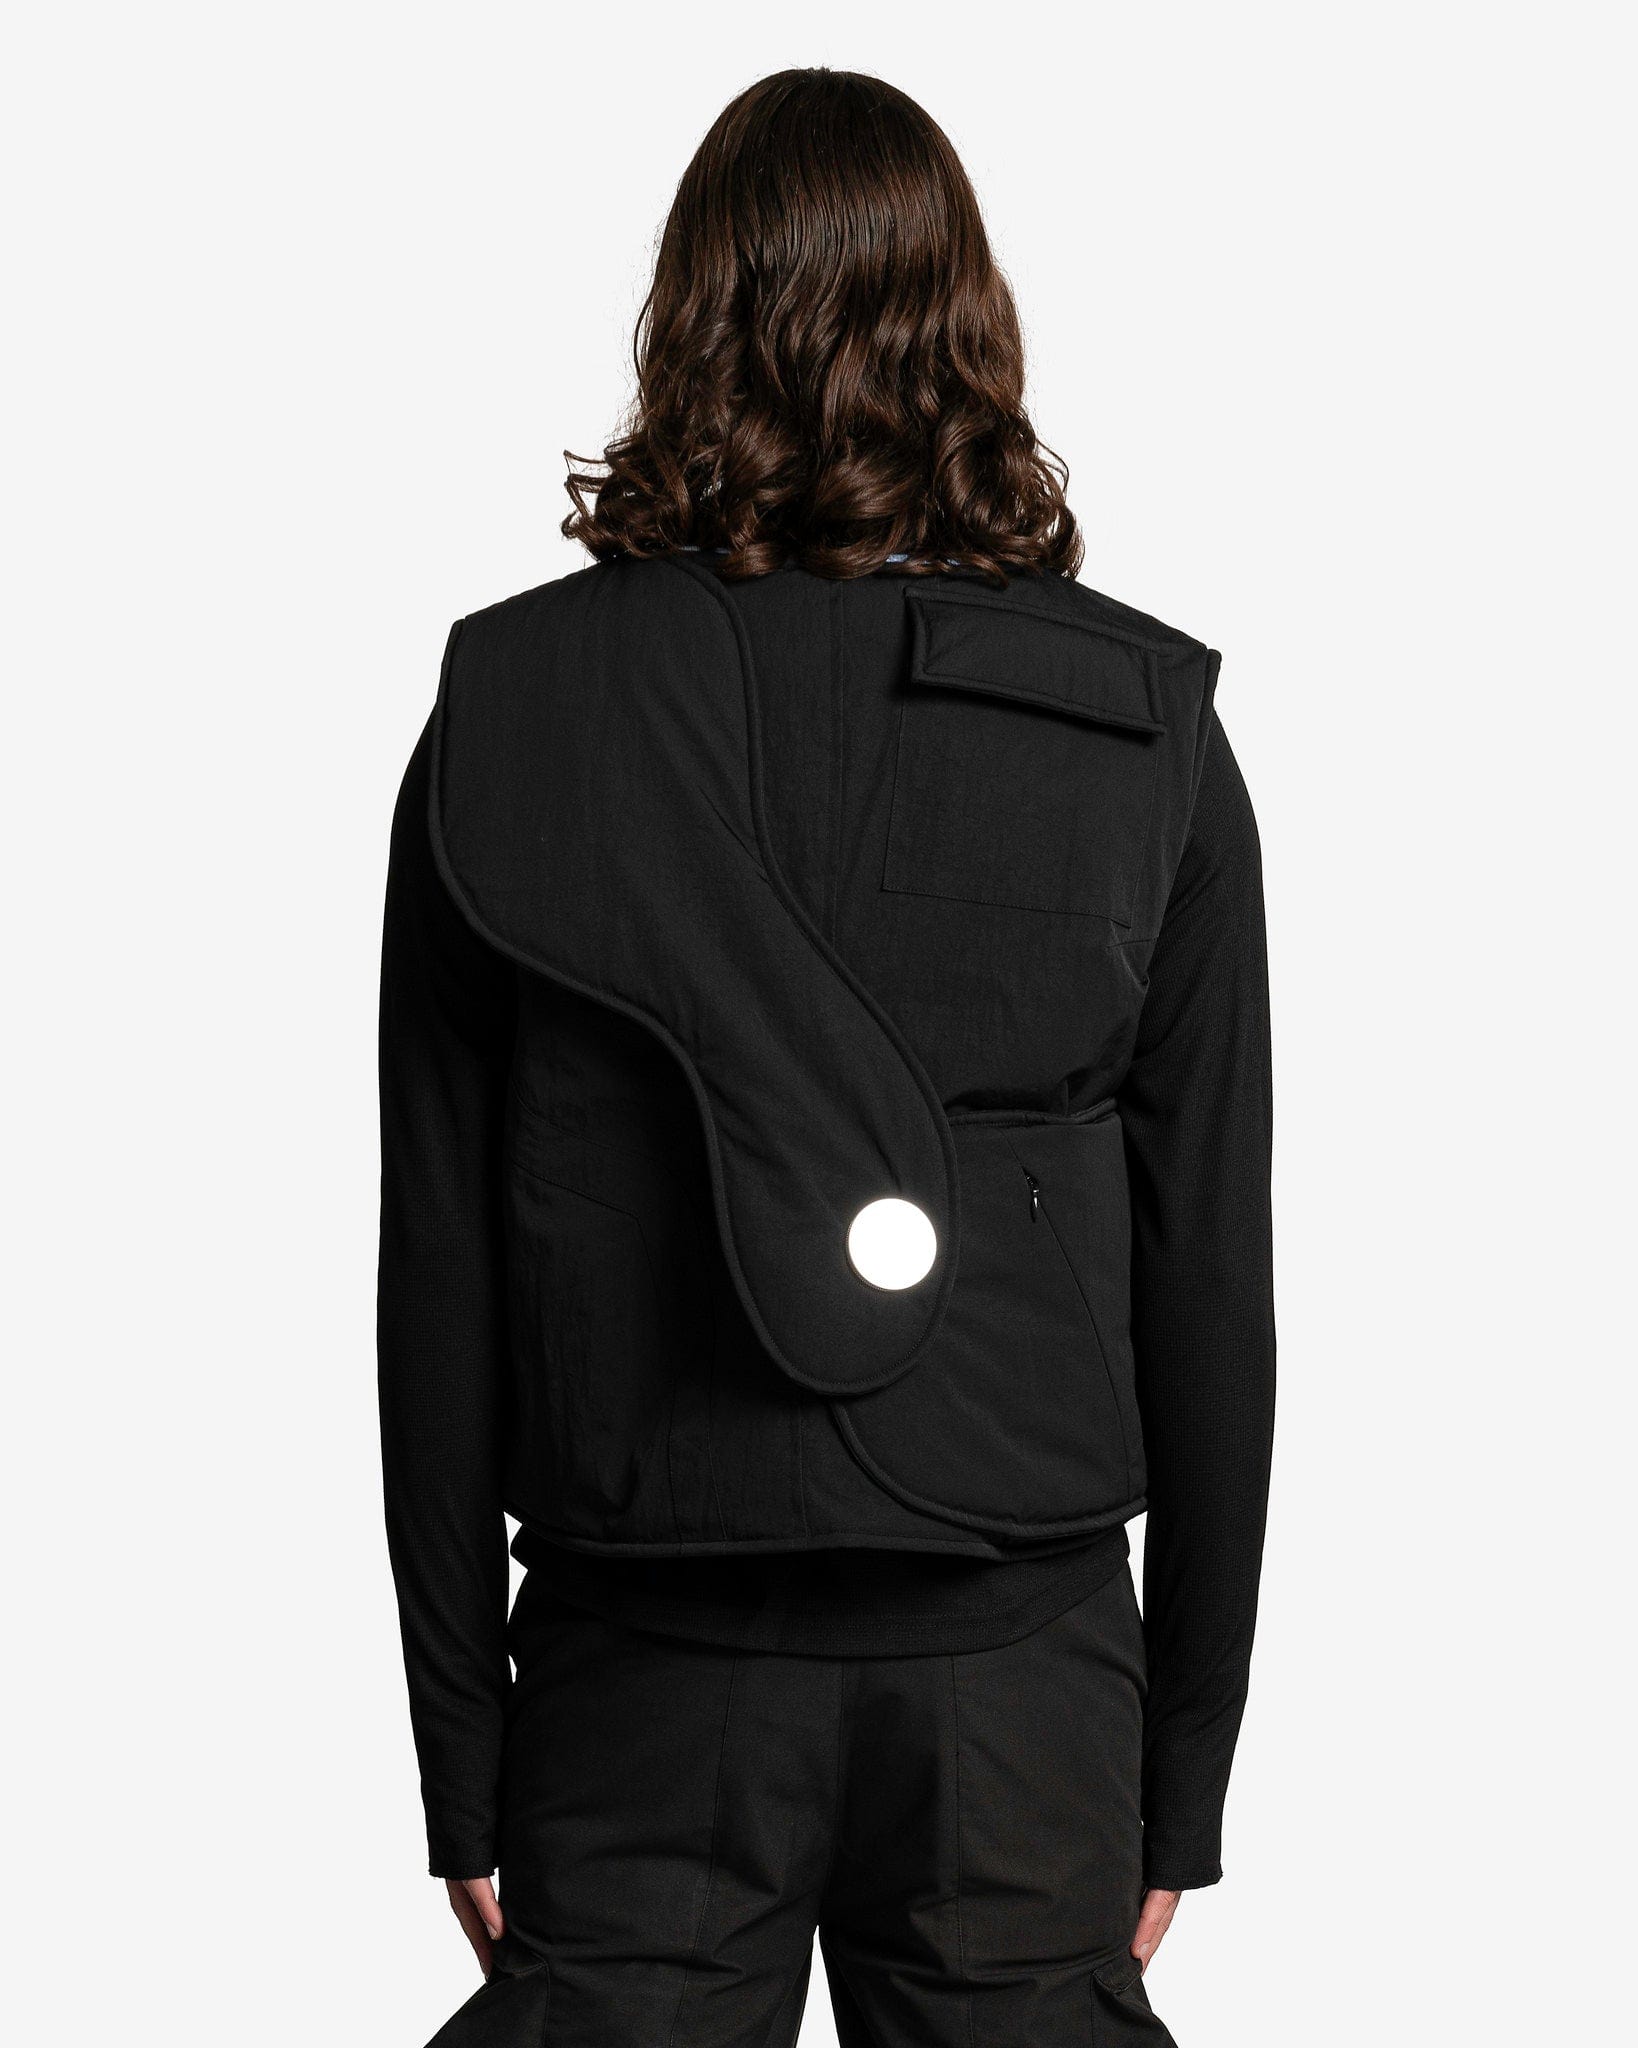 CMMAWEAR Men's Jackets Polaris Vest in Black